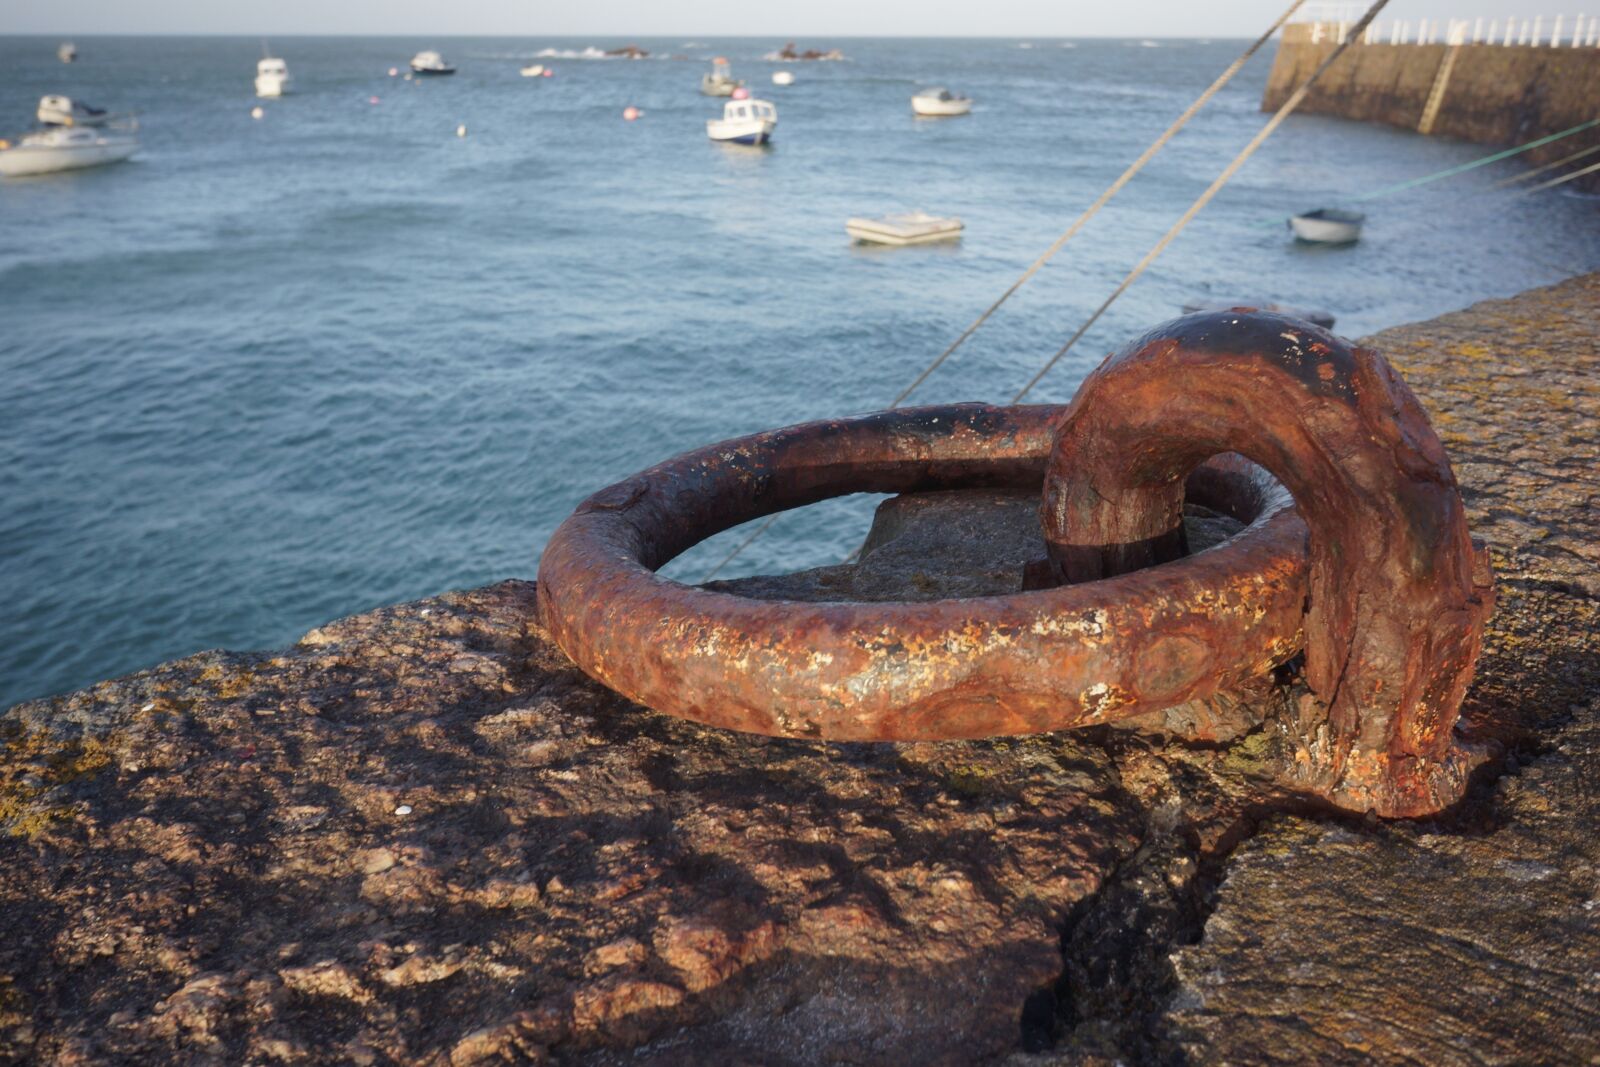 Sony Alpha NEX-7 sample photo. Harbor, rust, boats photography